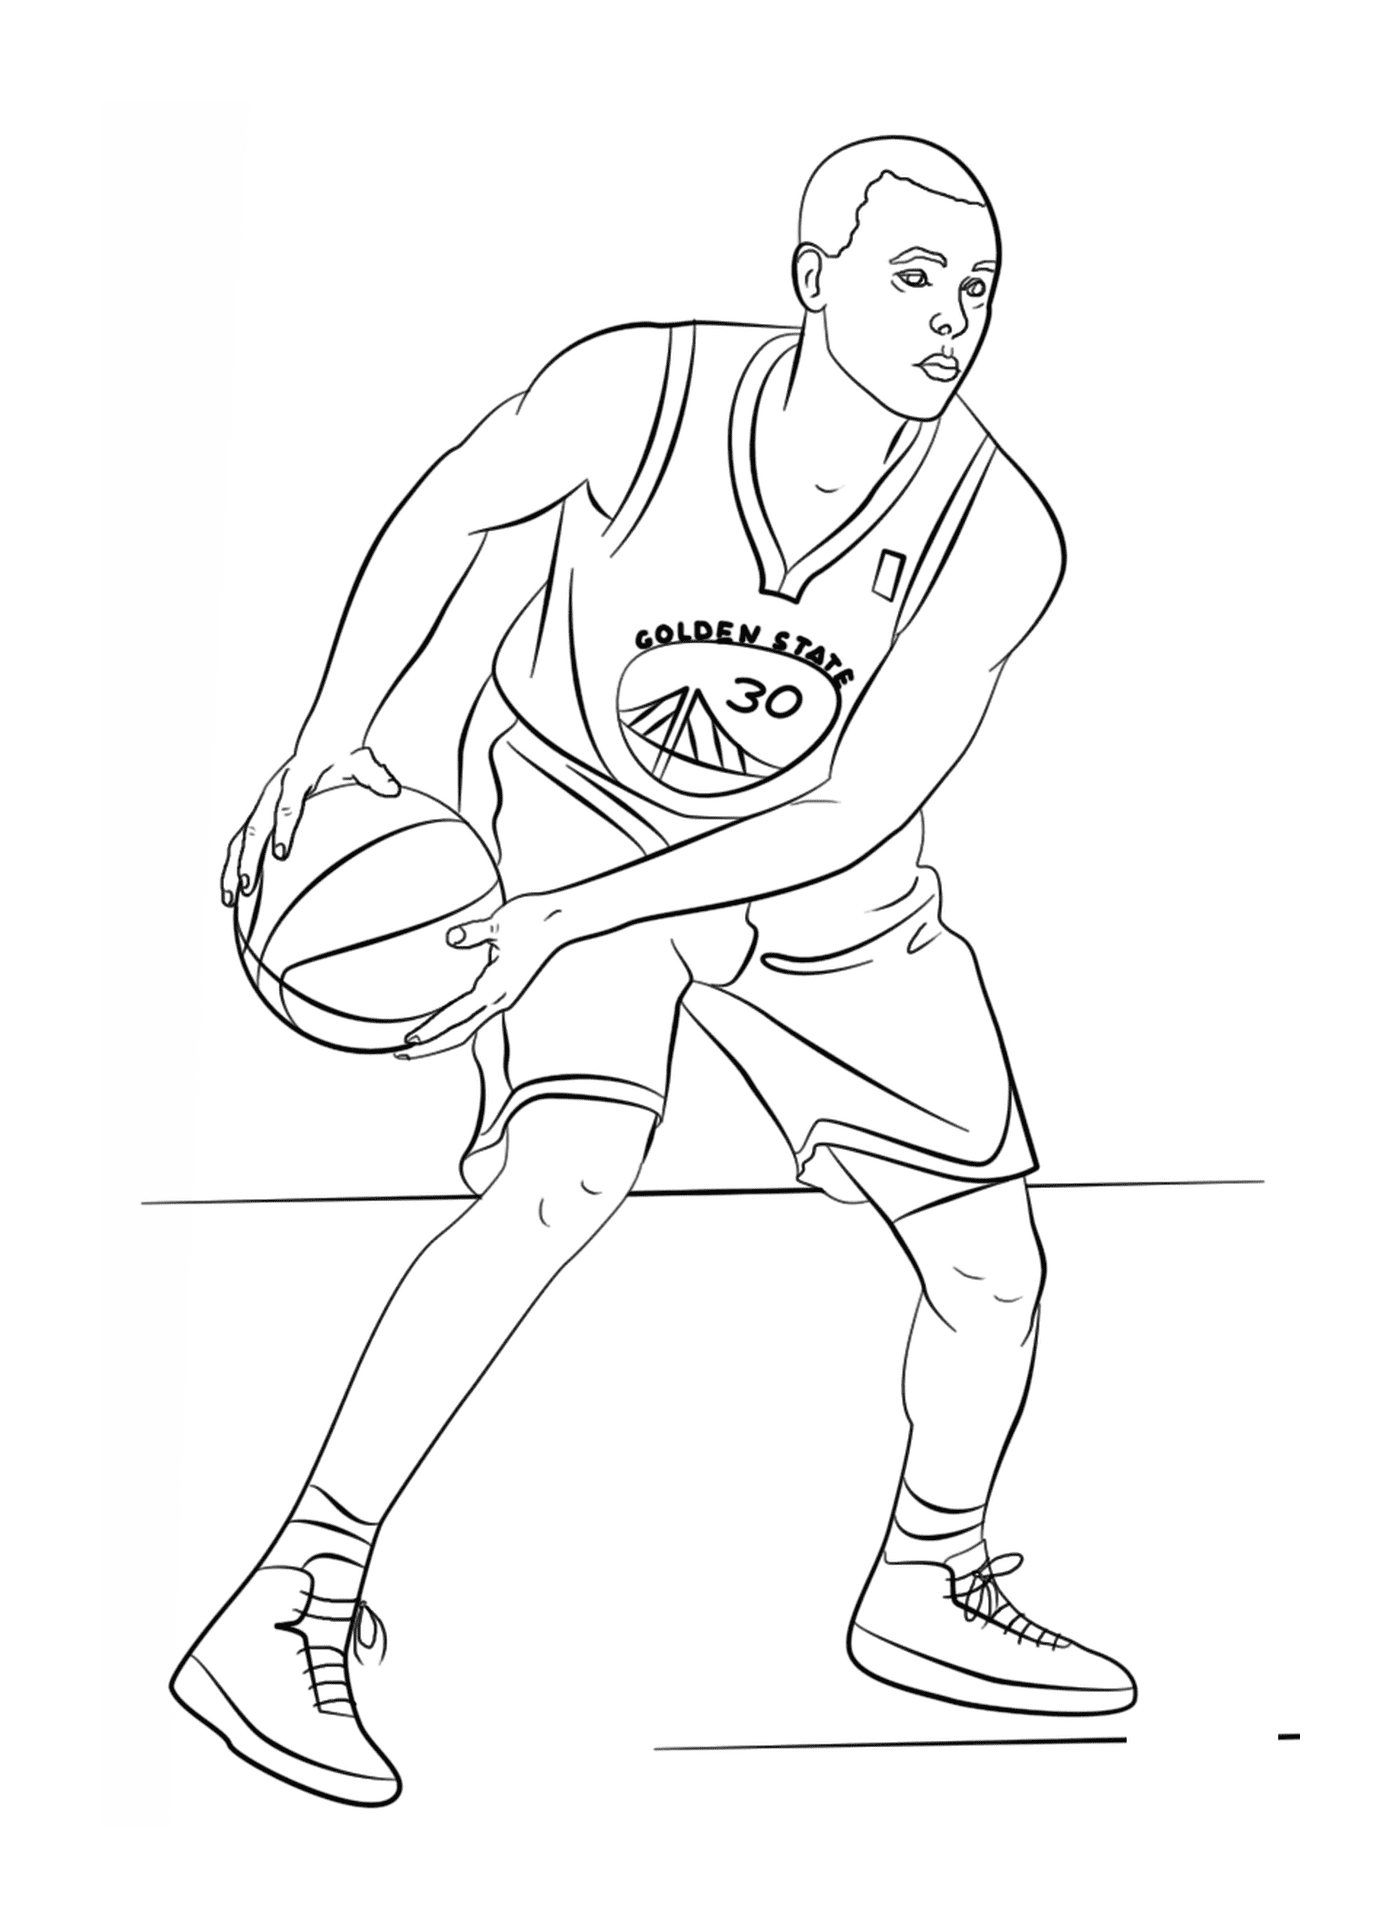  Стивен Карри, баскетболист НБА 